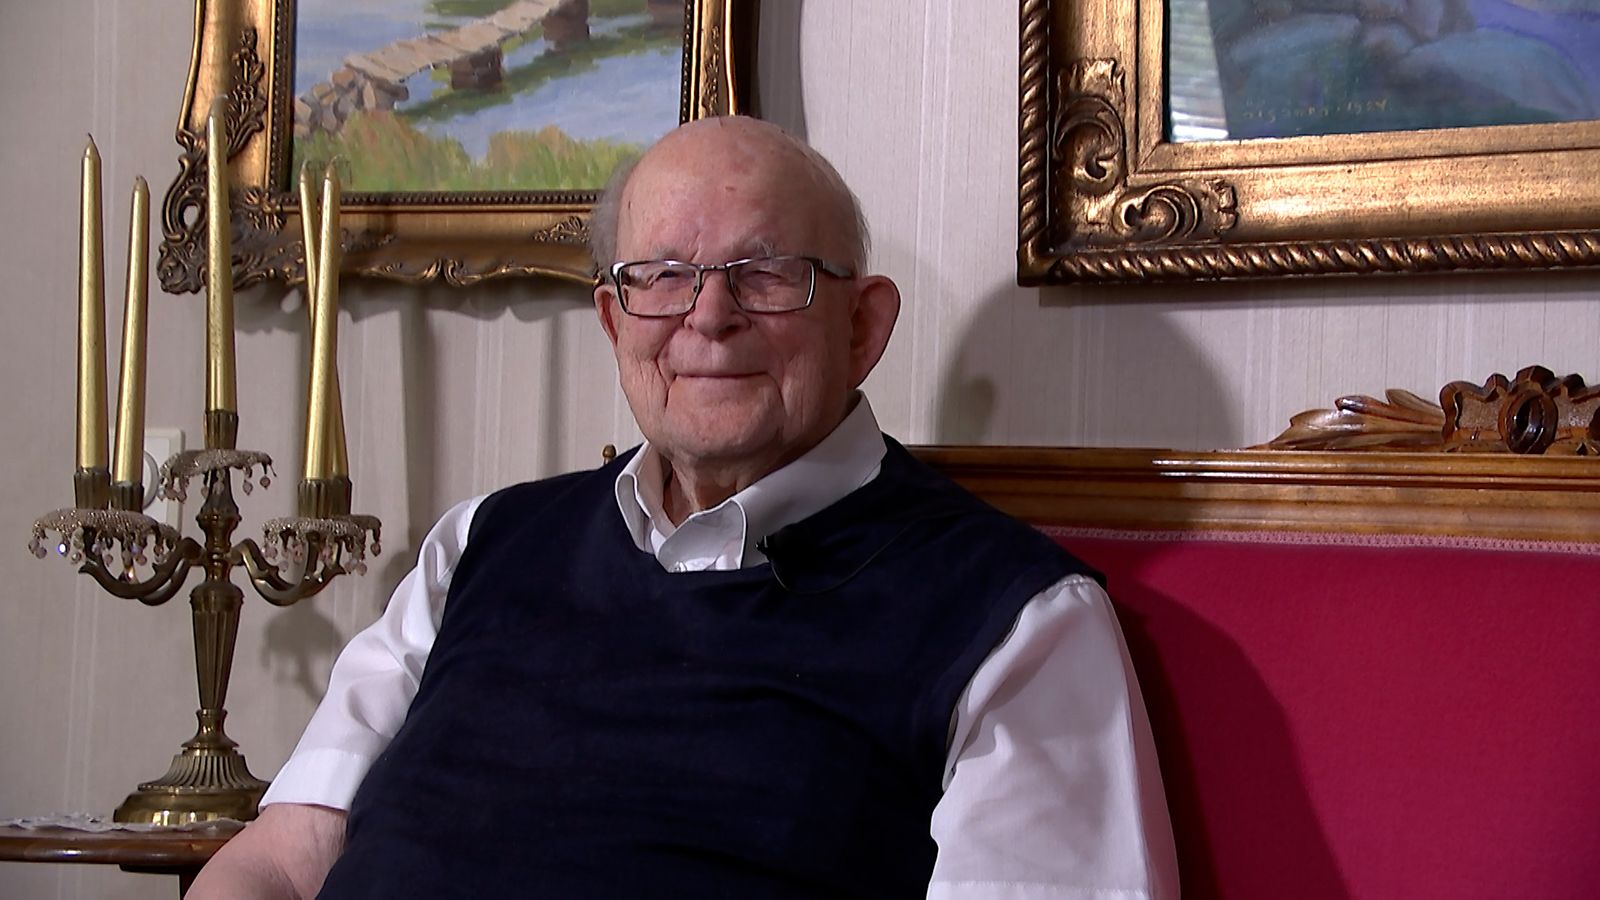 Kolmen sodan taistellut veteraani Eero, 100, on Suomen vanhimman  aatelissuvun vanhin jäsen 